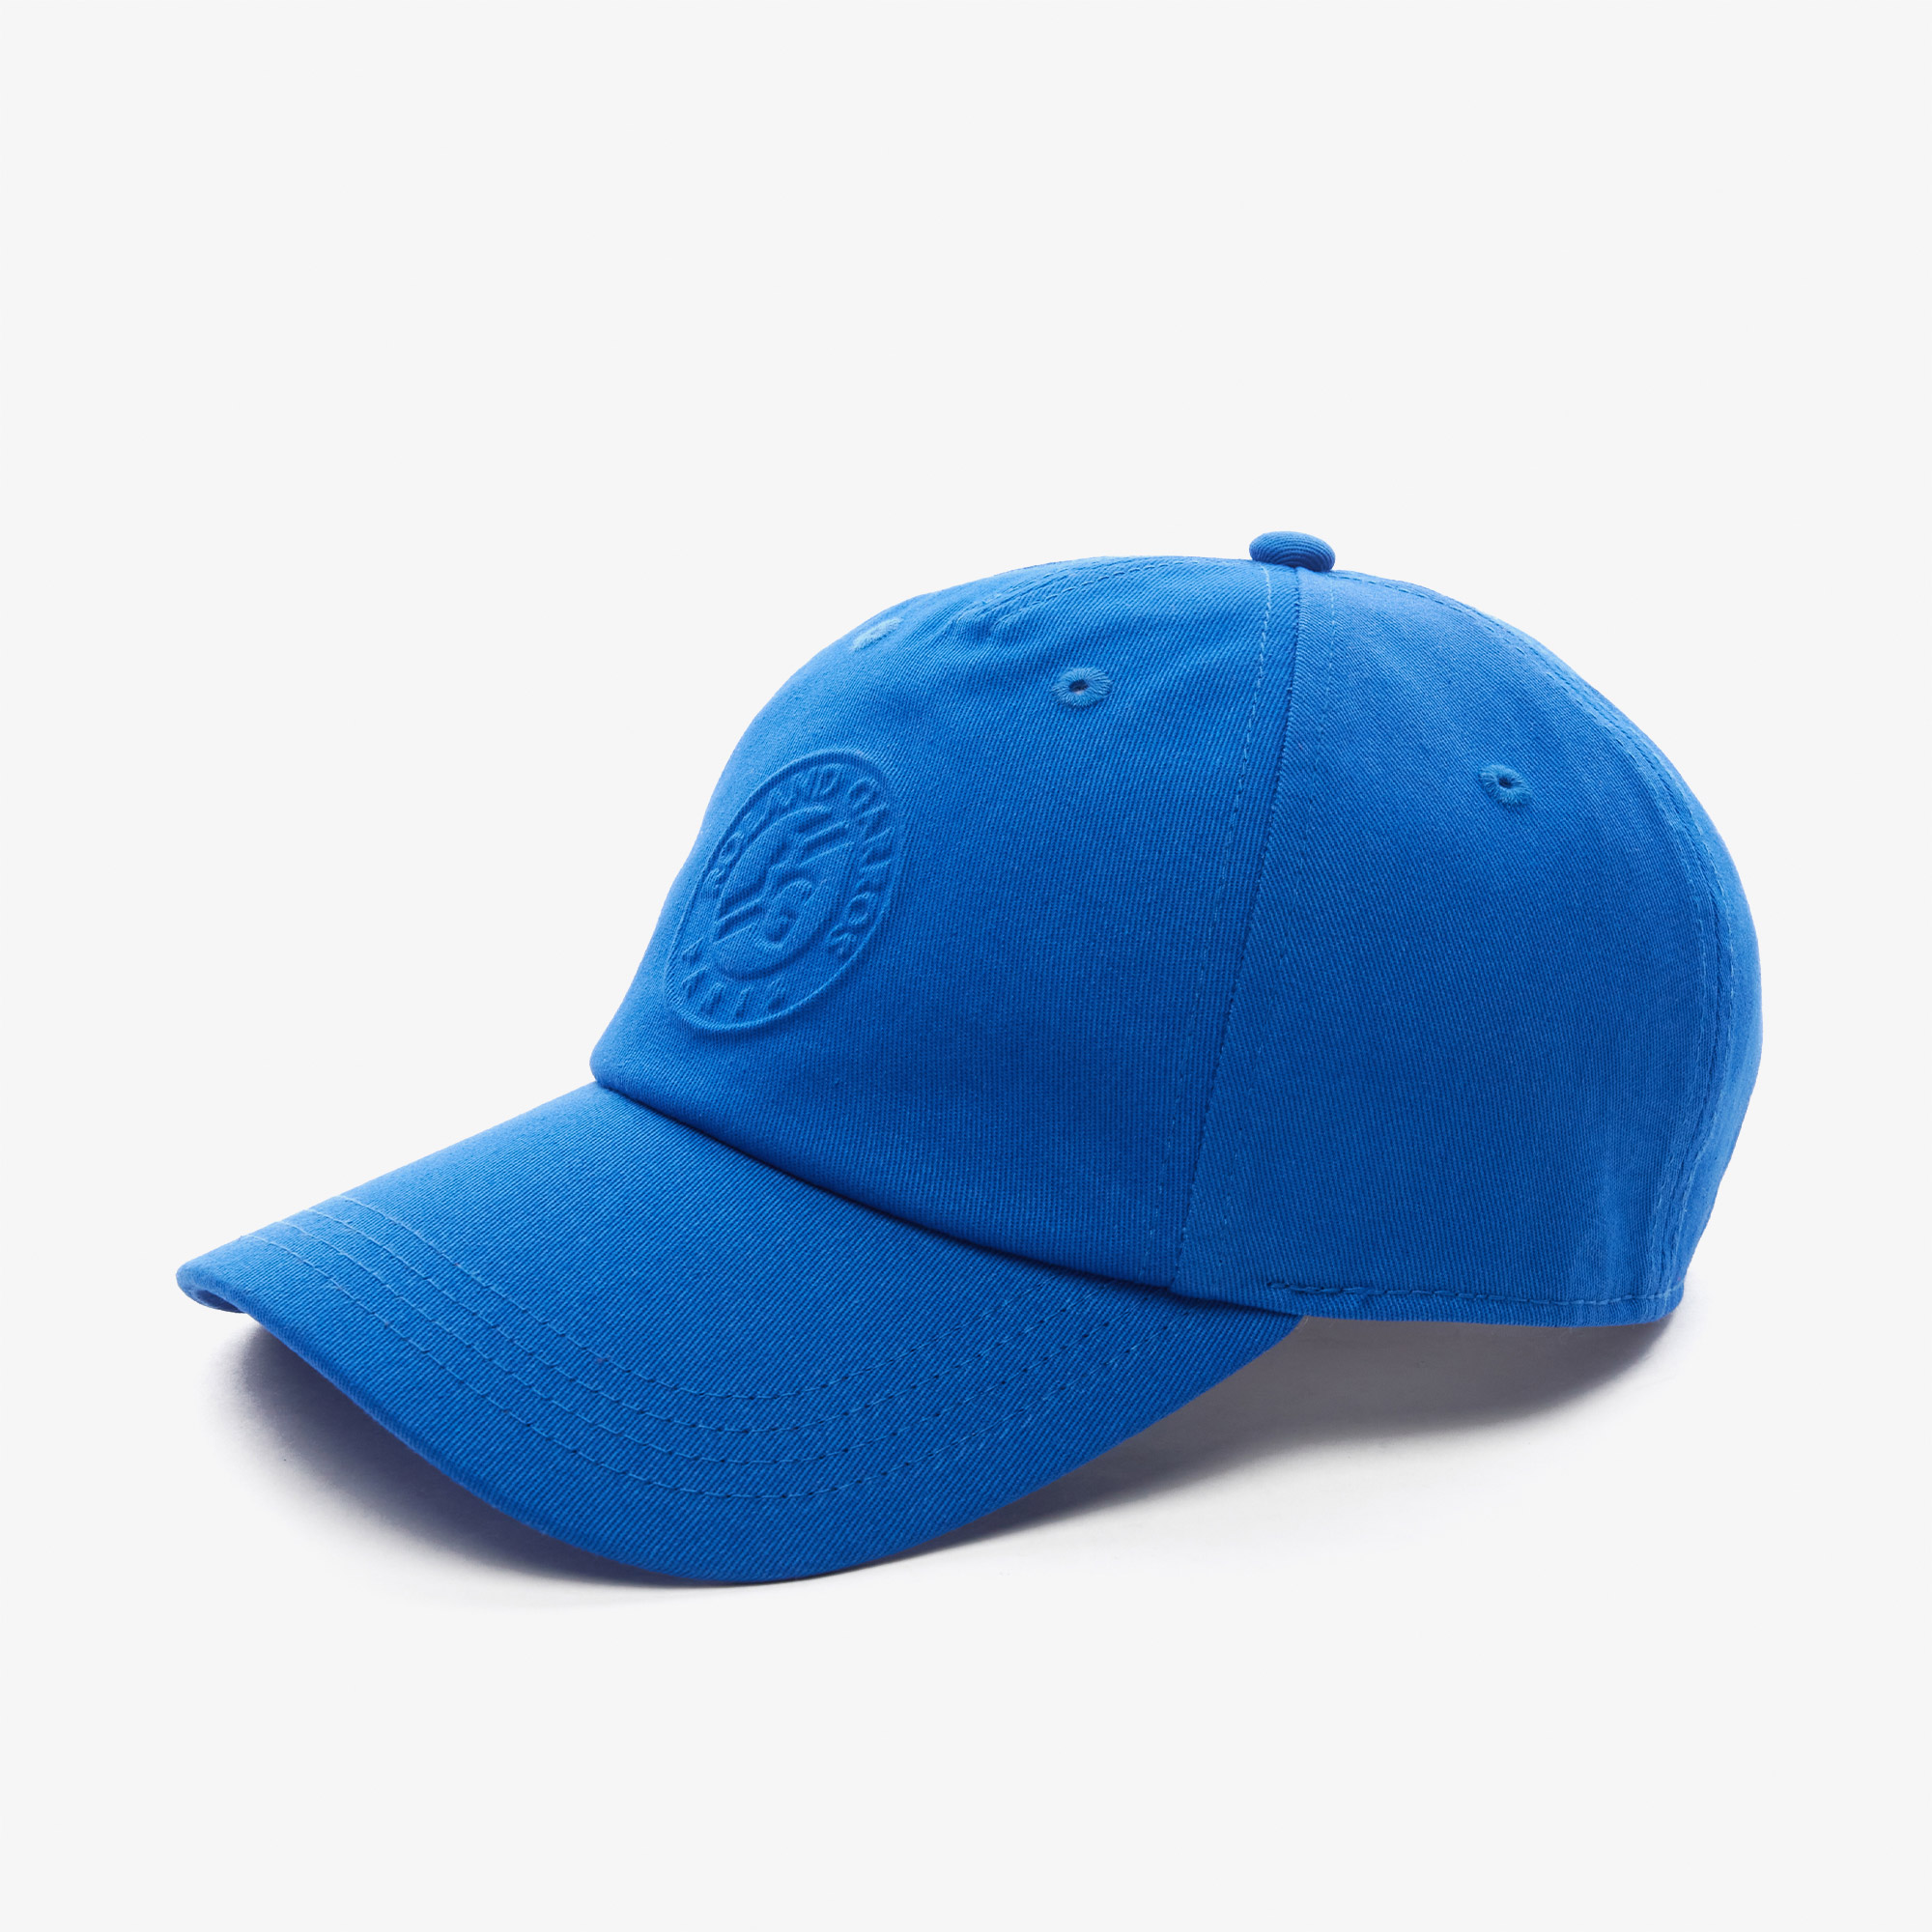 Lacoste Roland Garros Erkek Baskılı Mavi Şapka. 1